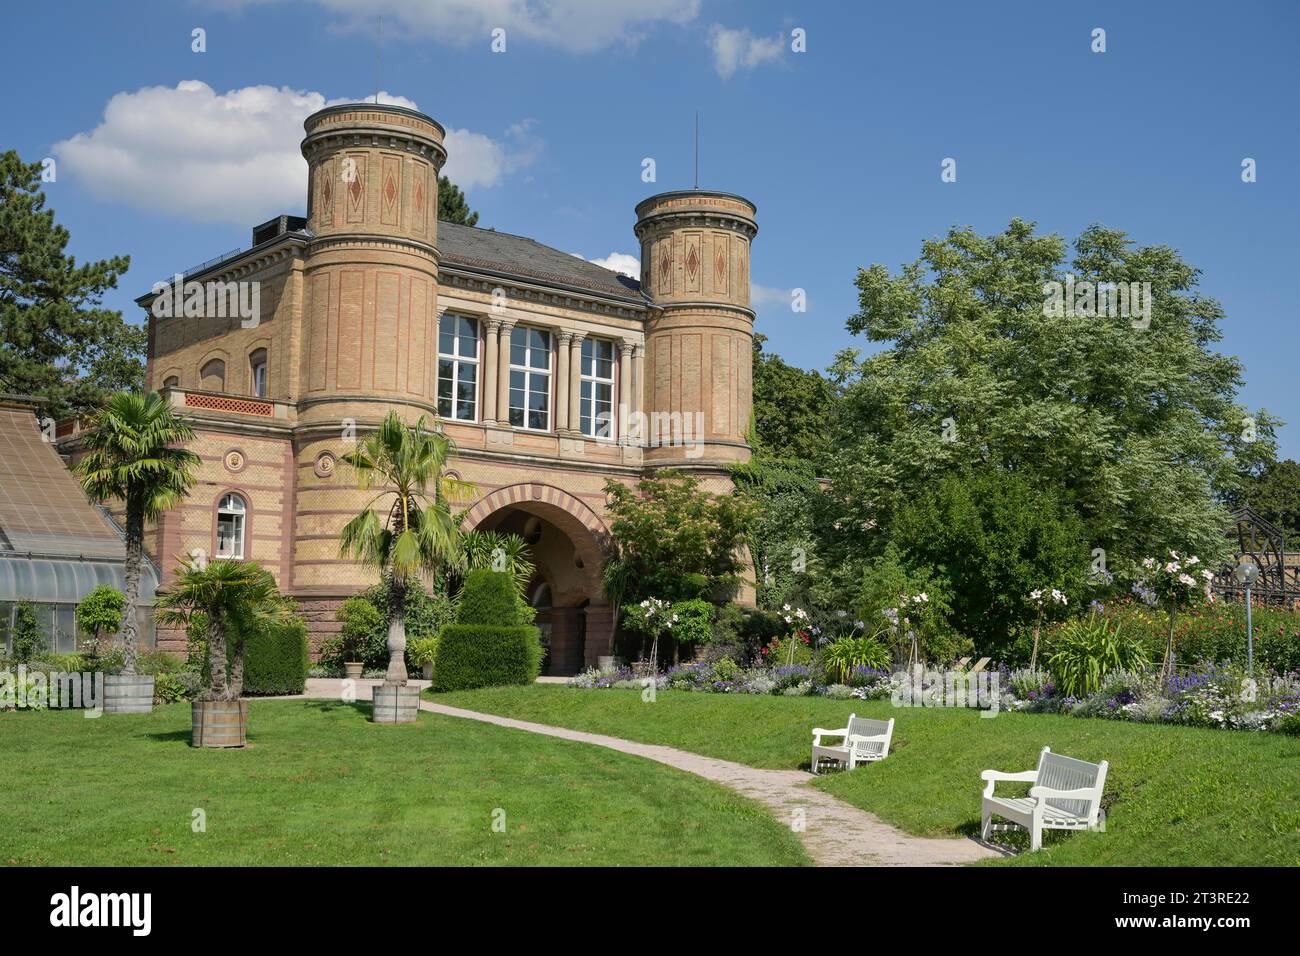 Torbogensaal, Botanischer Garten Karlsruhe, Hans-Thoma-Straße, Karlsruhe, Baden-Württemberg, Deutschland Stock Photo